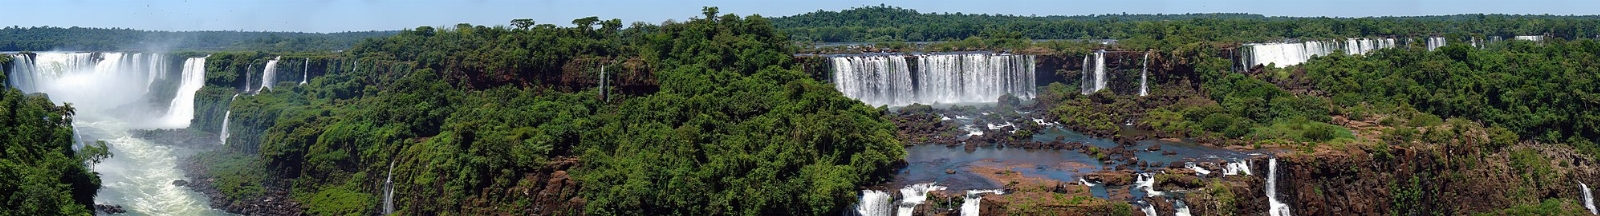 2000px-Iguazu_D%C3%A9cembre_2007_-_Panorama_1.jpg